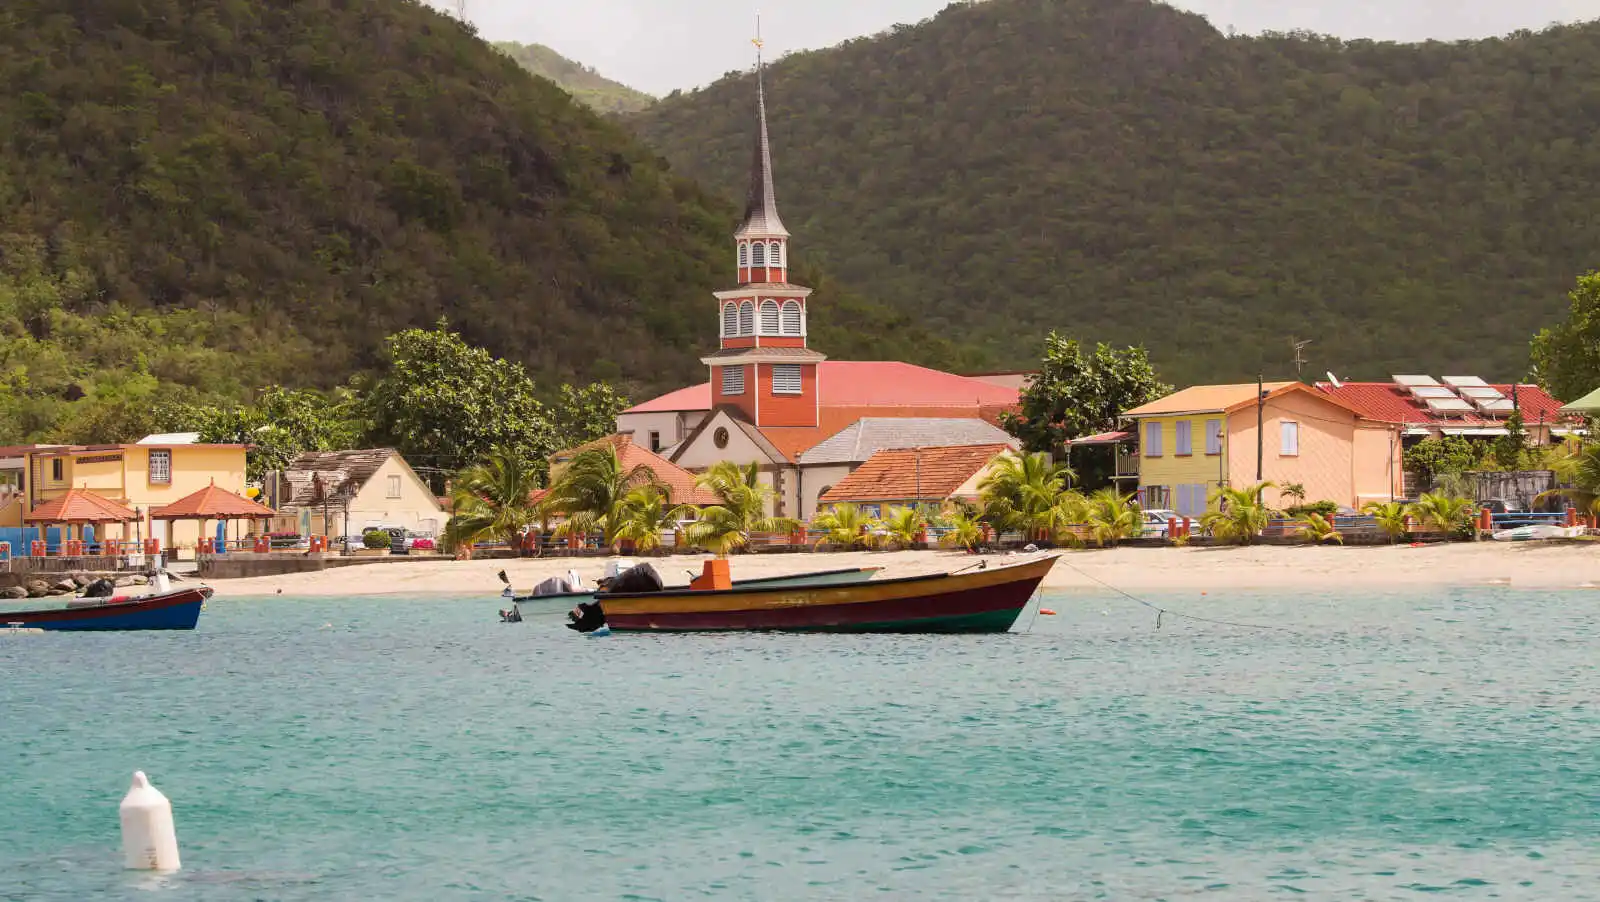 Village en bord de mer, Martinique, Caraïbes